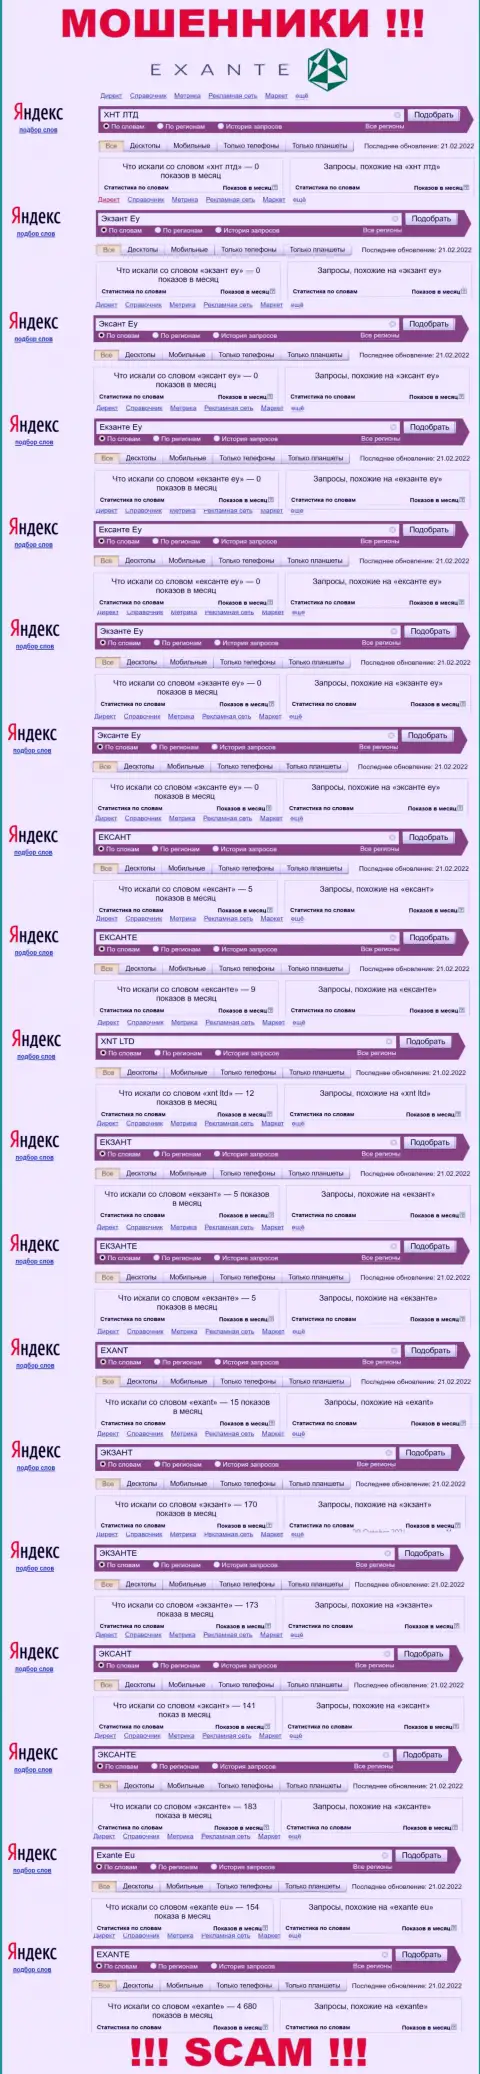 Количество онлайн запросов в поисковиках интернет сети по бренду мошенников ЕКЗАНТЕ